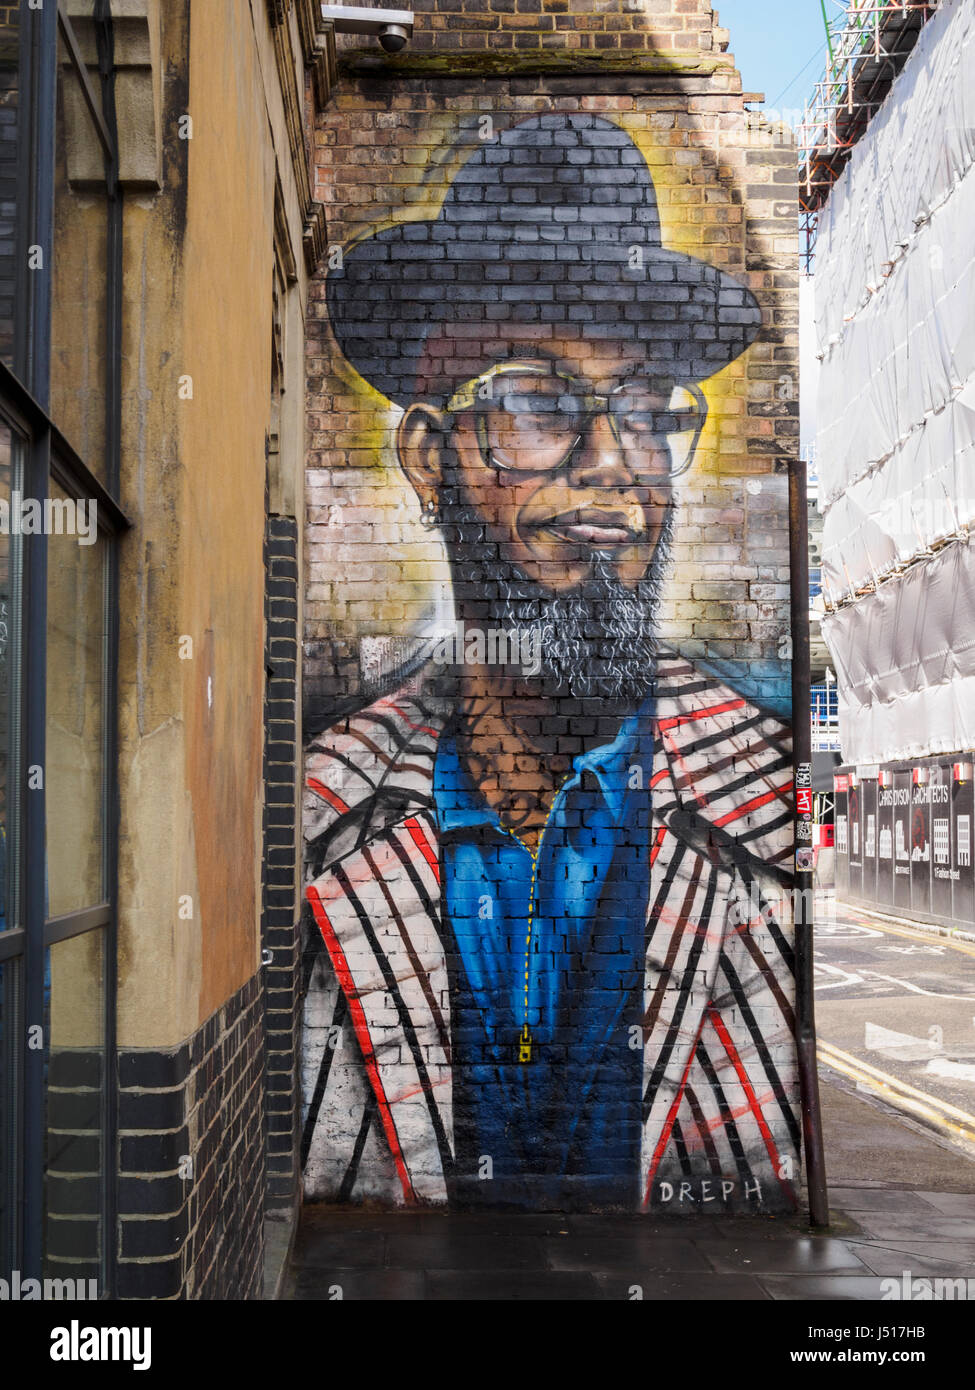 Street art in east London Stock Photo